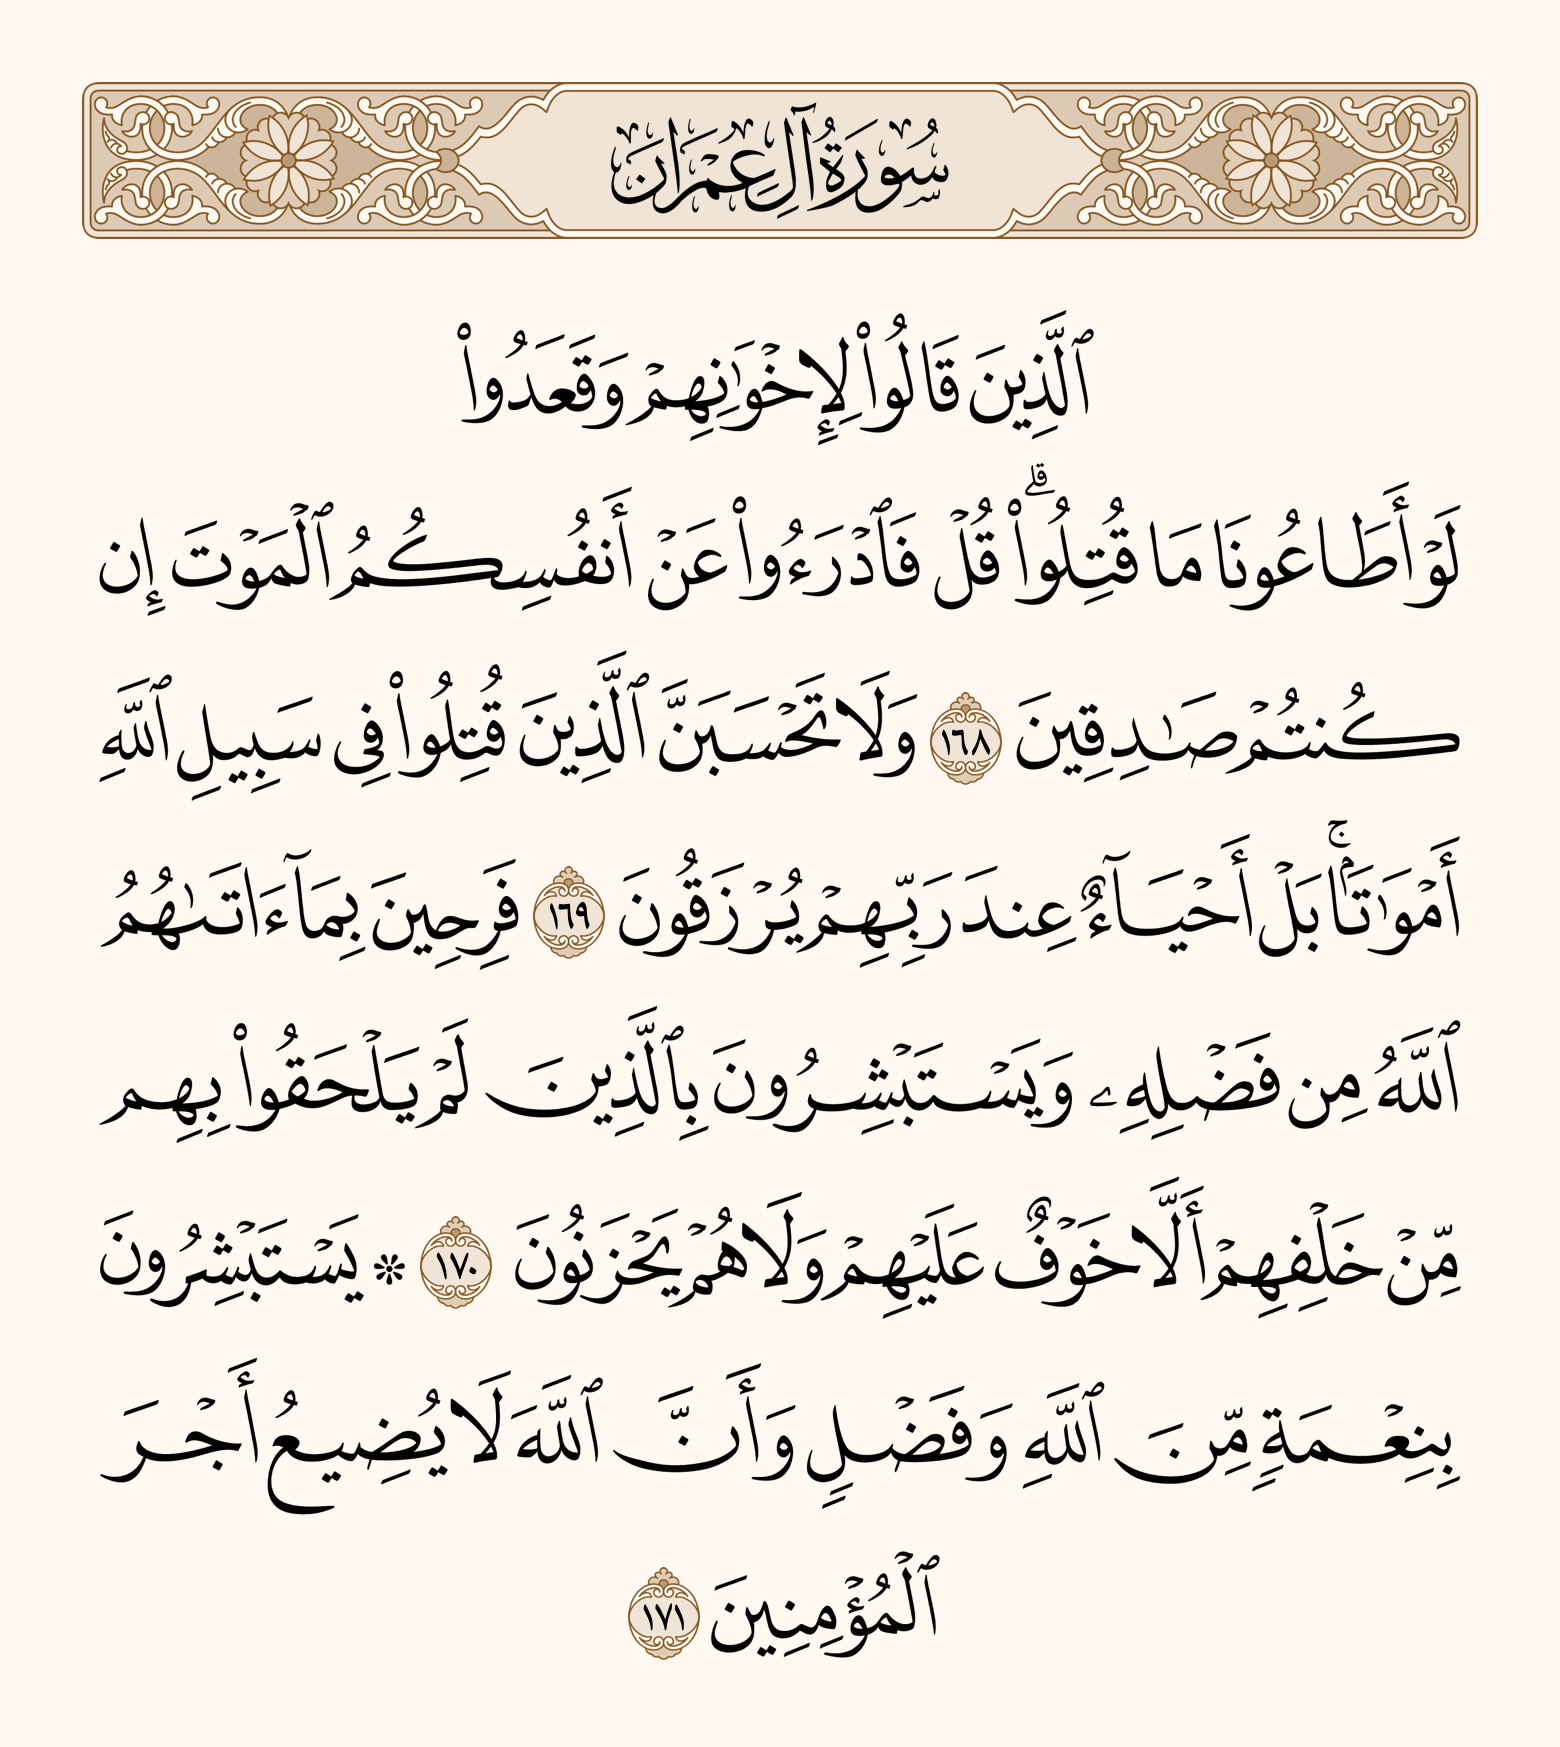 З iPhoneIslam.com, Священний Коран арабською мовою з арабським шрифтом